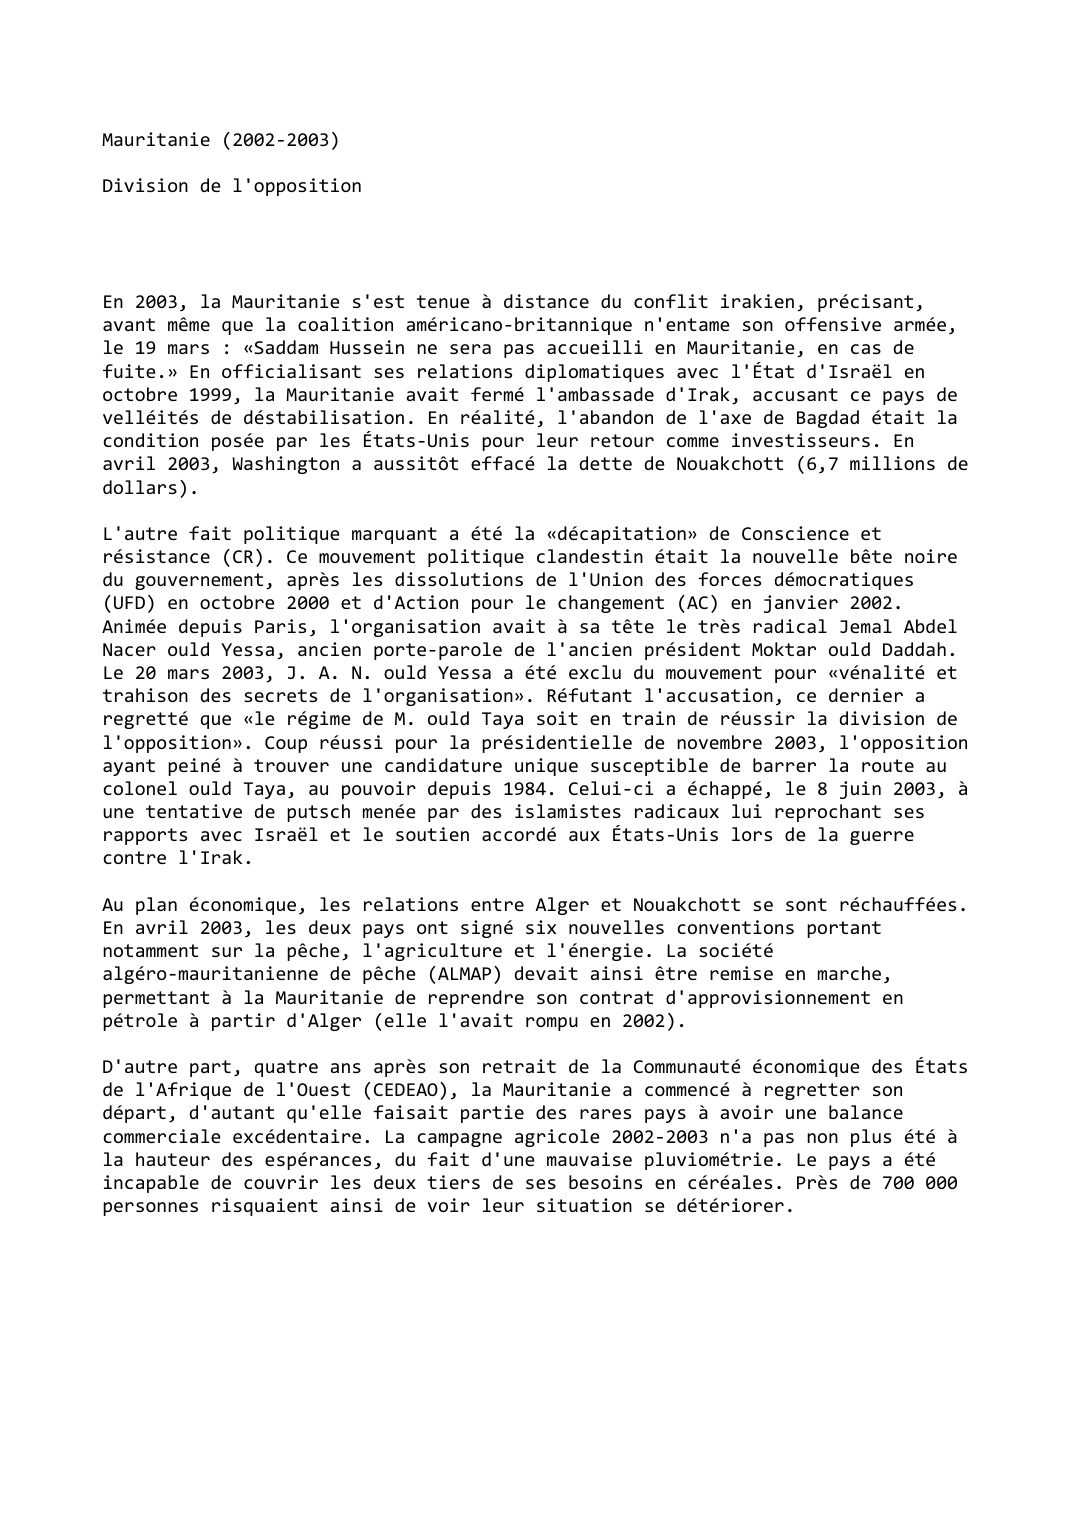 Prévisualisation du document Mauritanie (2002-2003)

Division de l'opposition